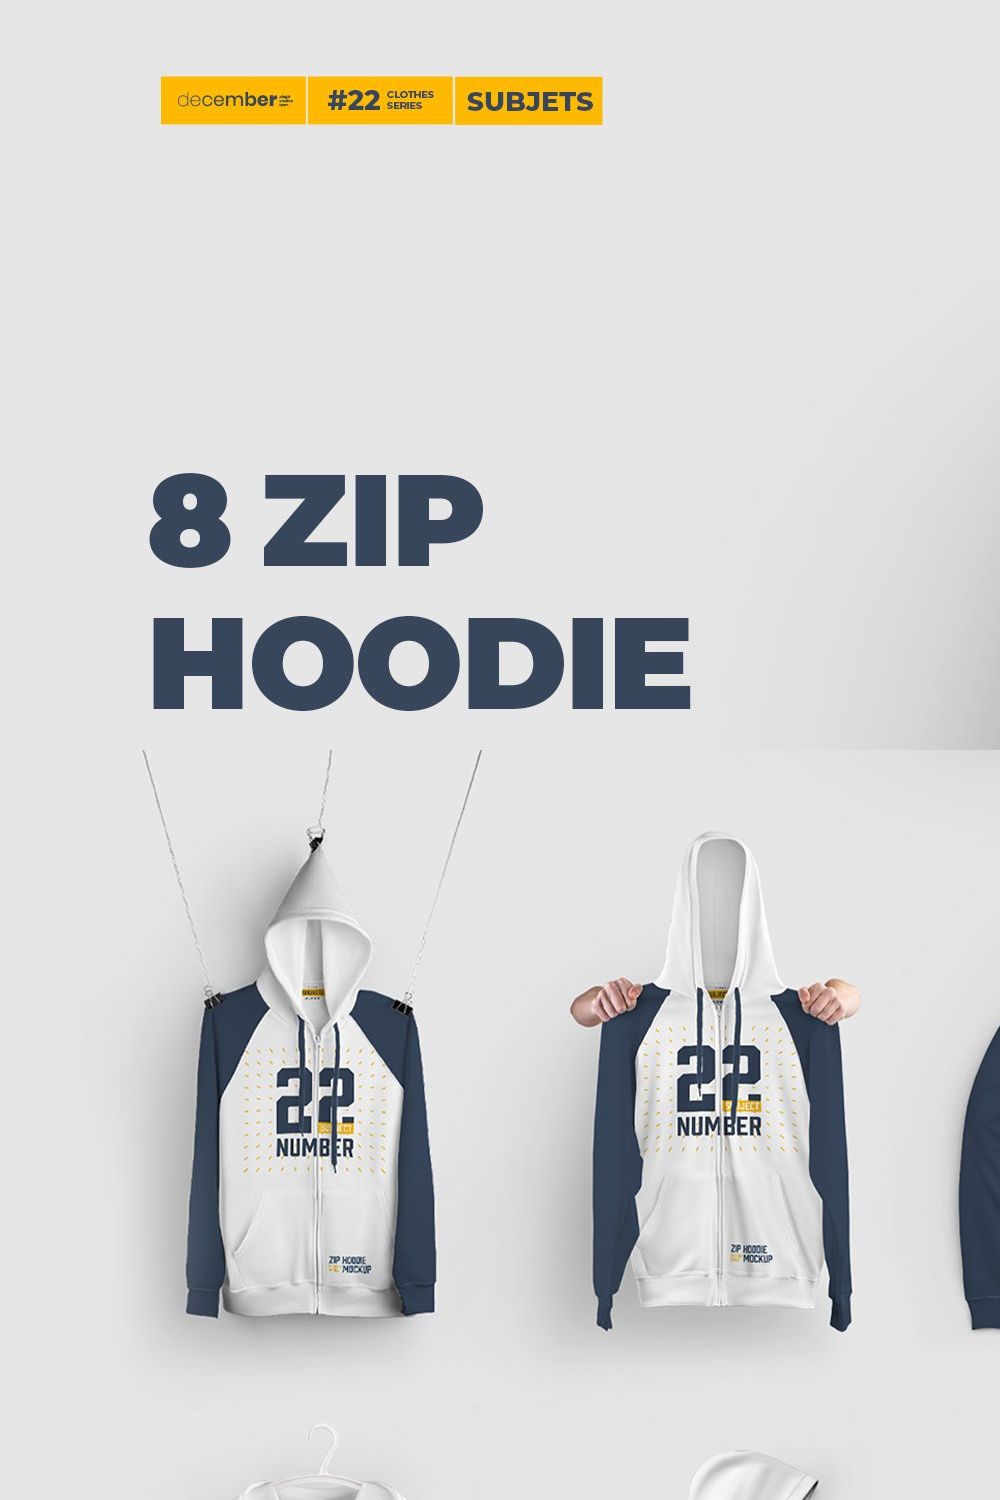 8 Zip Hoodie Mockups (Subject) pinterest preview image.